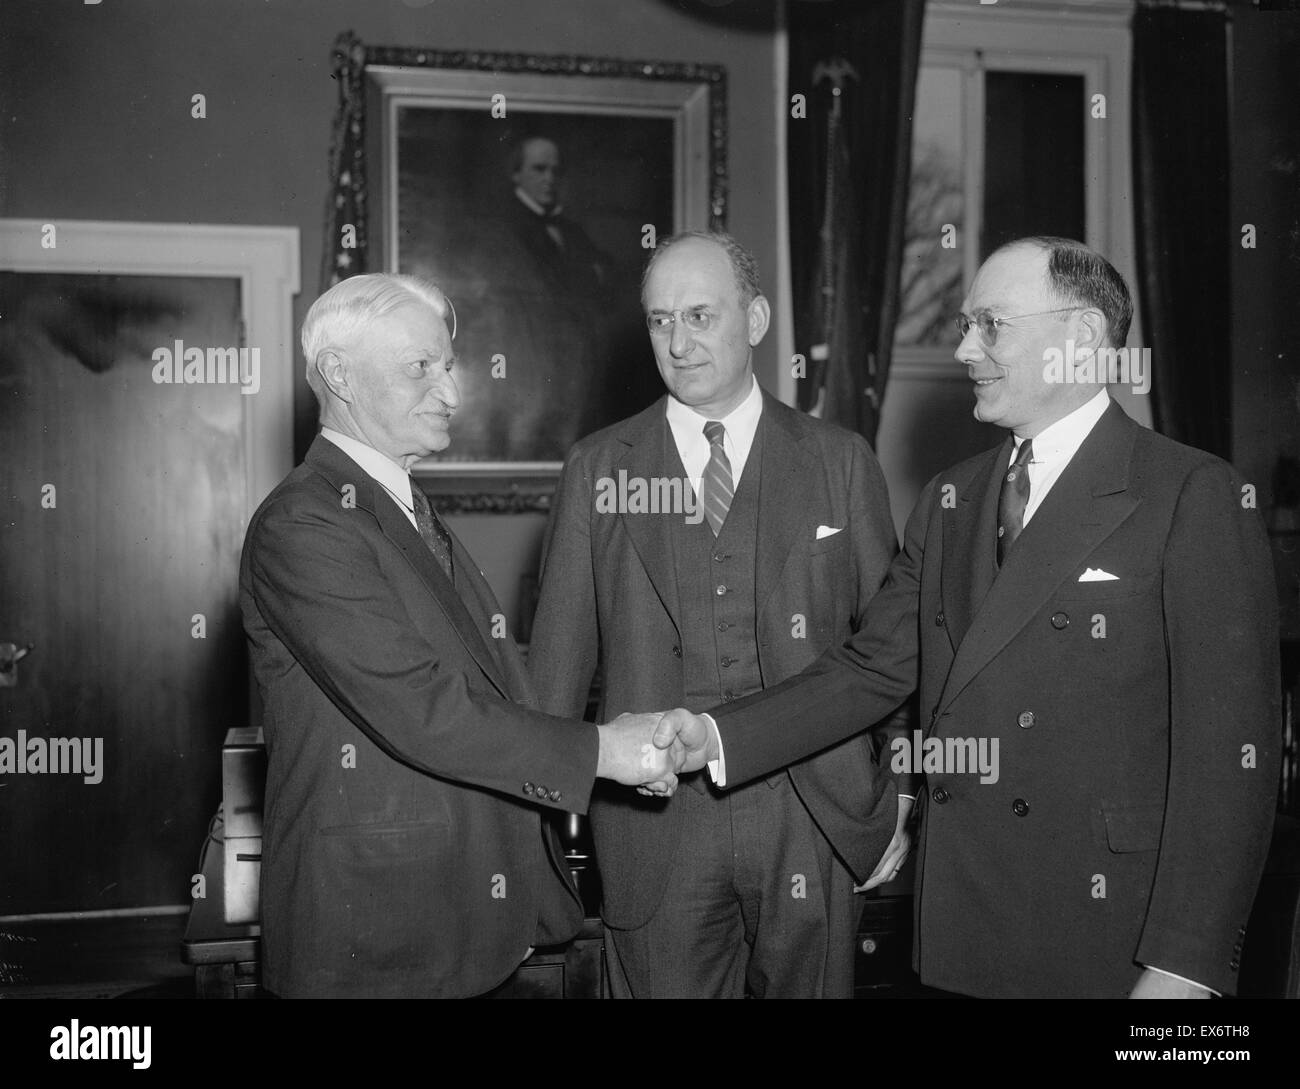 William H. Moran, ritiro il capo dei servizi segreti degli Stati Uniti, si congratula con il suo successore Frank J. Wilson, con sec del Tesoro Morgenthau 1936 Foto Stock